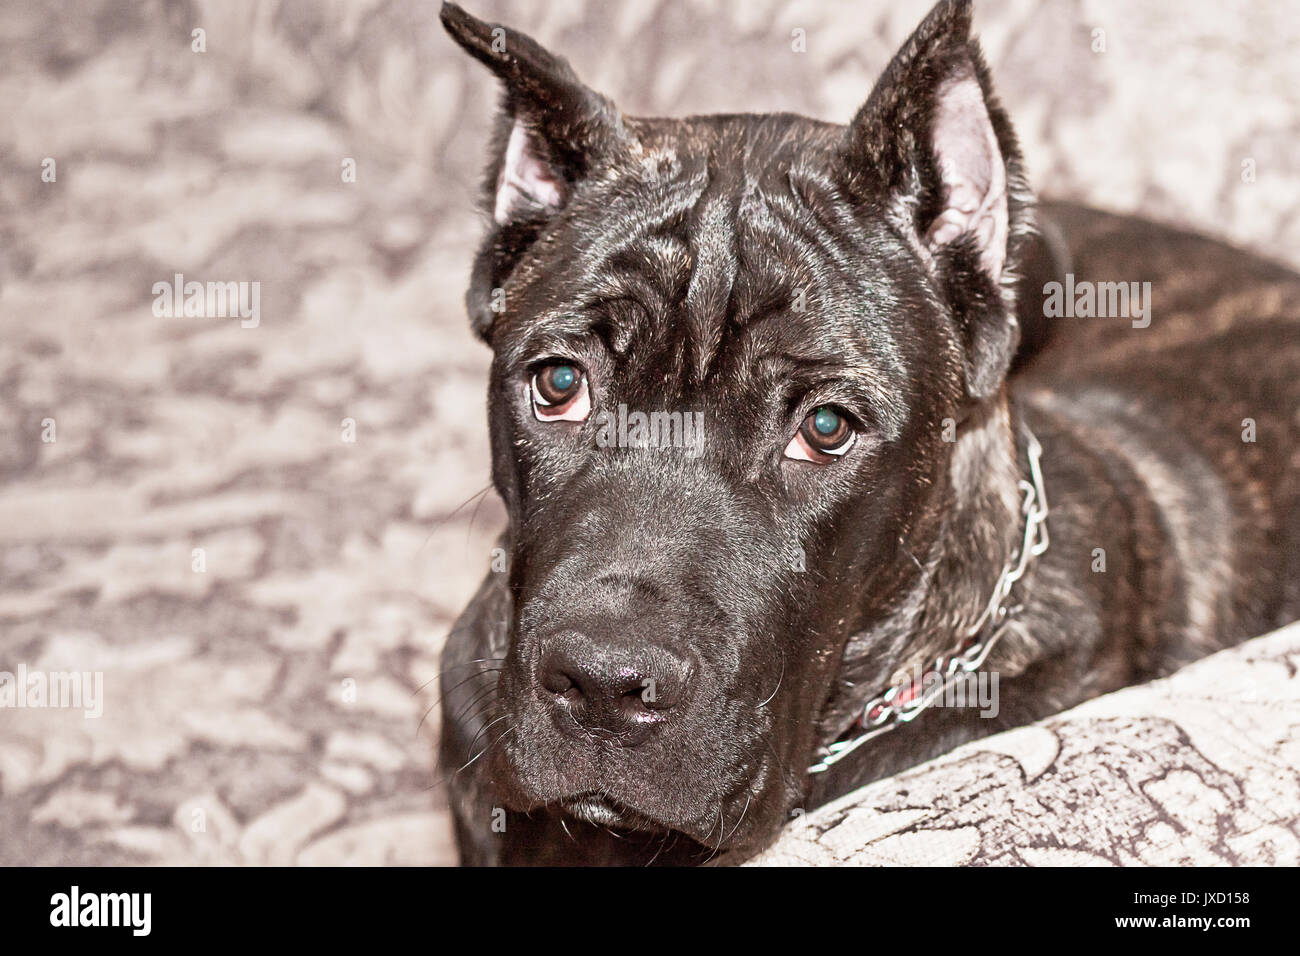 Cane Corso dog Stock Photo